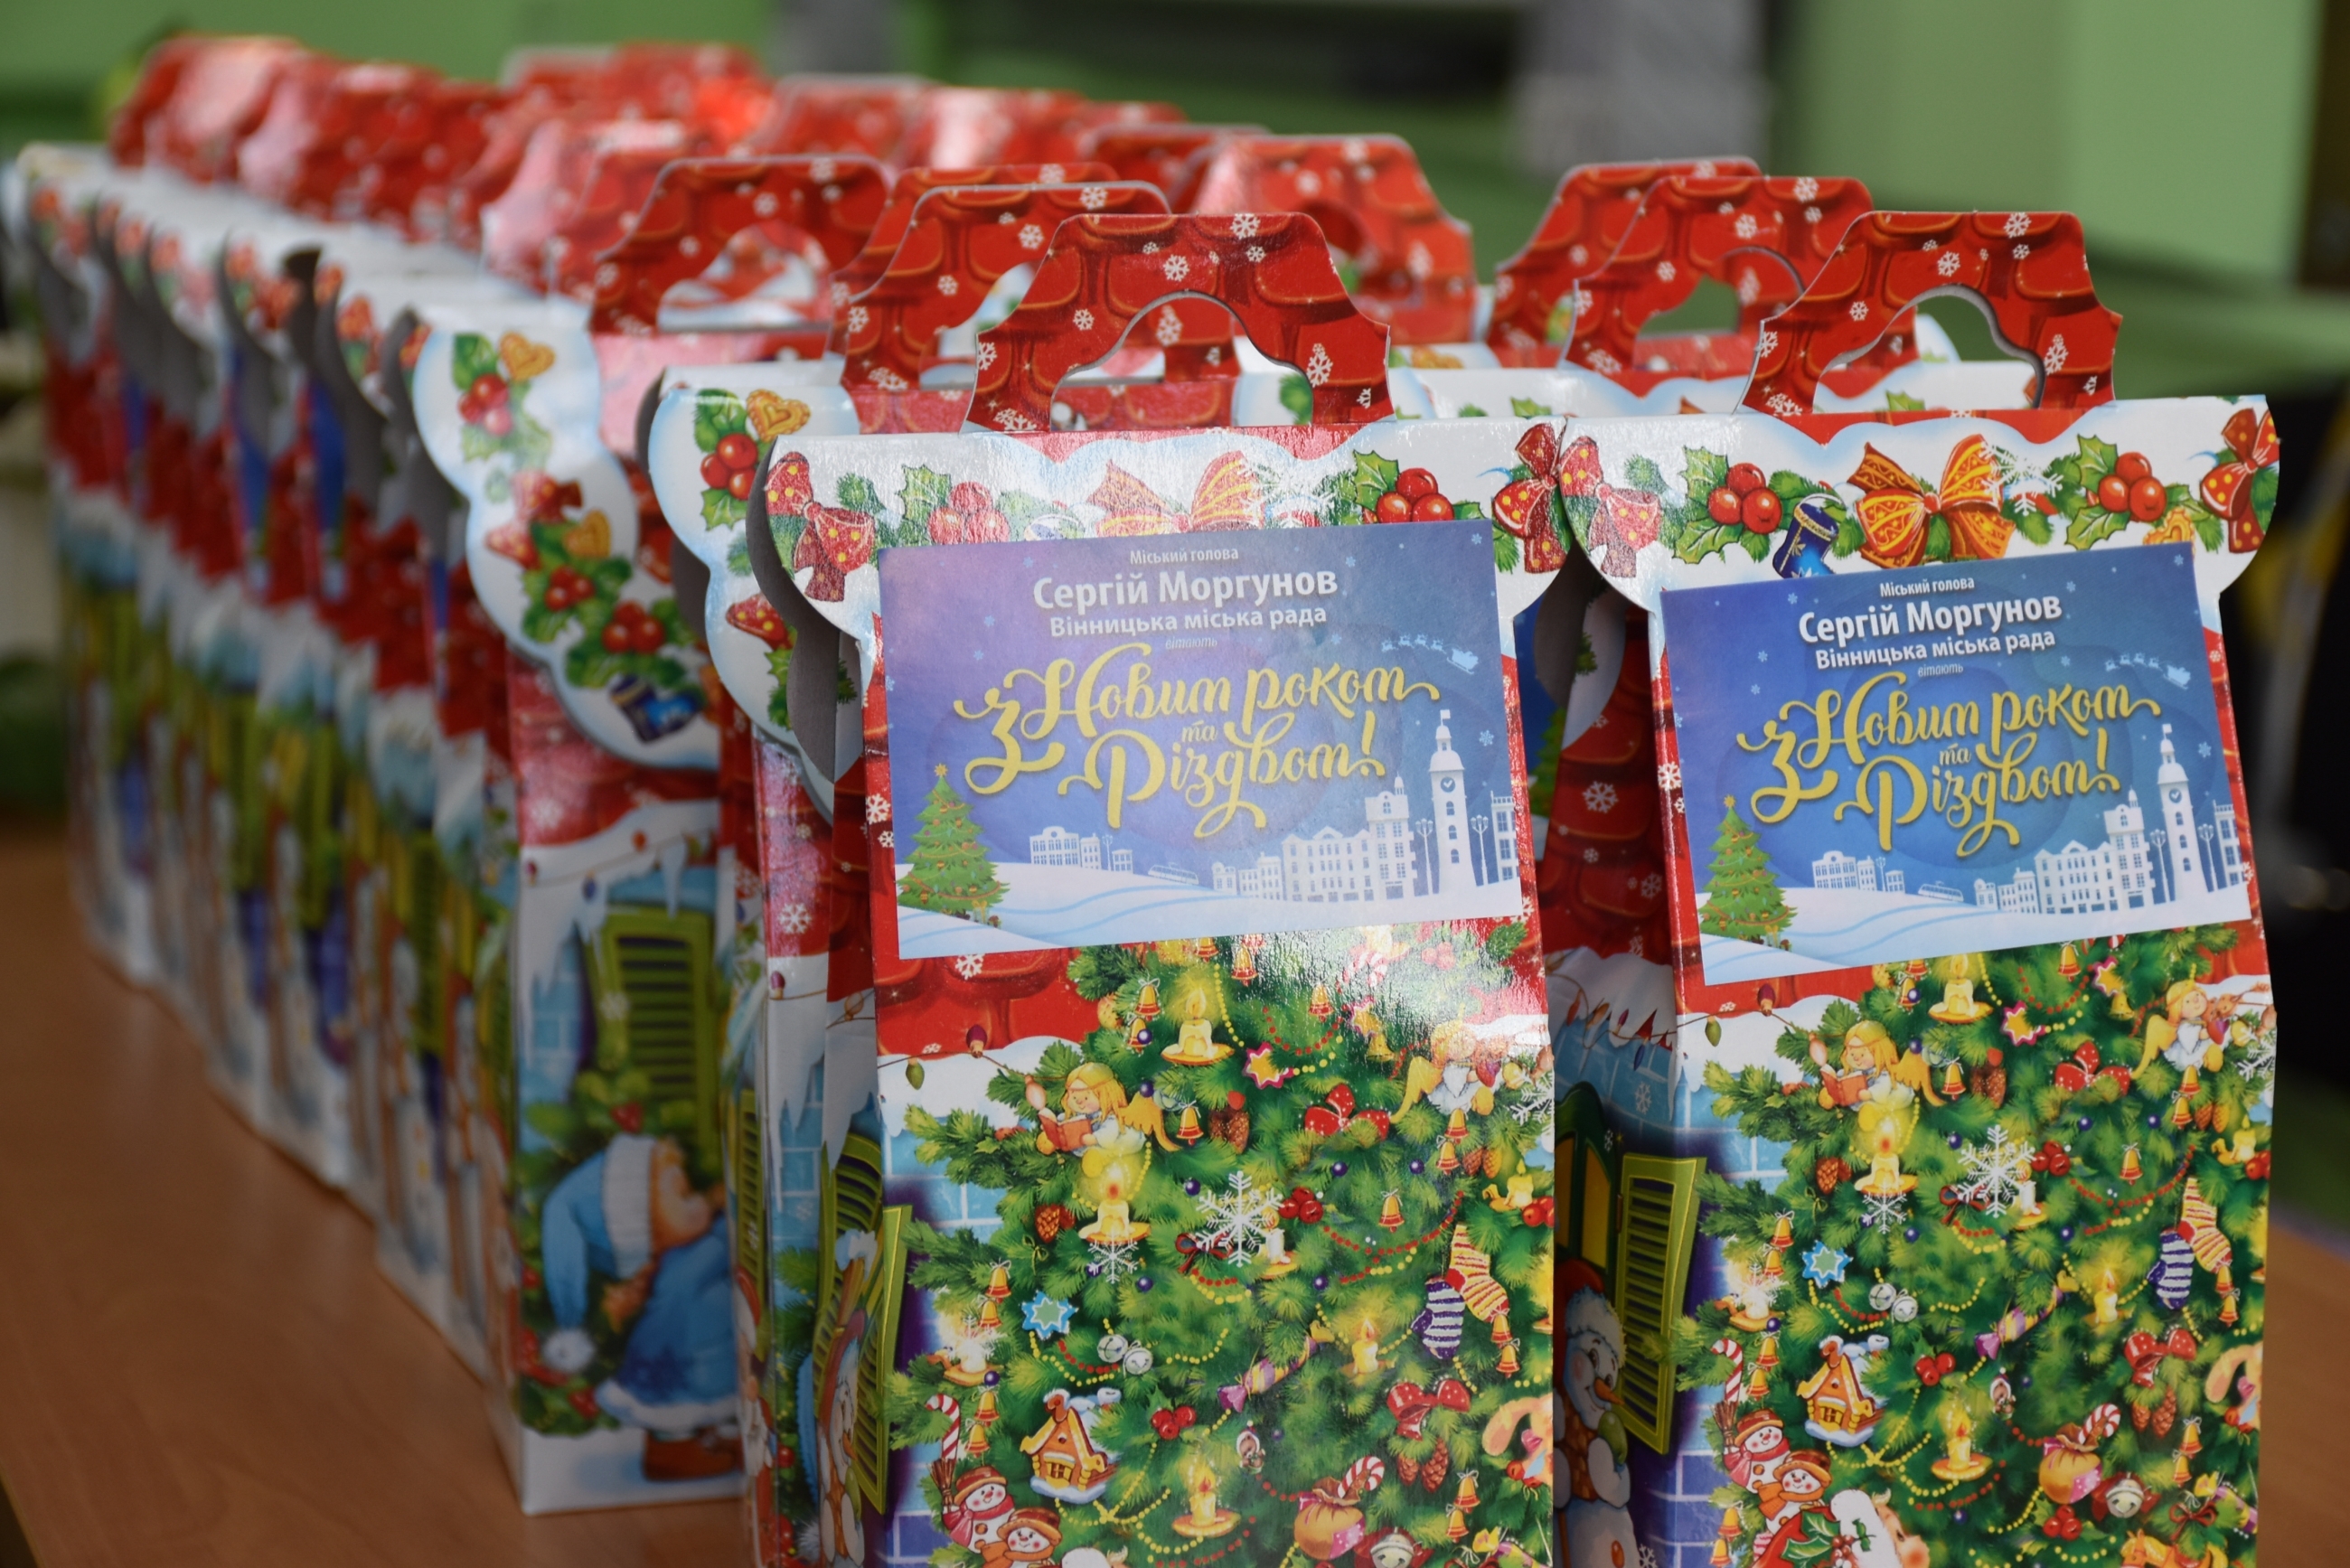 Понад 50 тисяч дітей Вінниці отримали новорічні подарунки